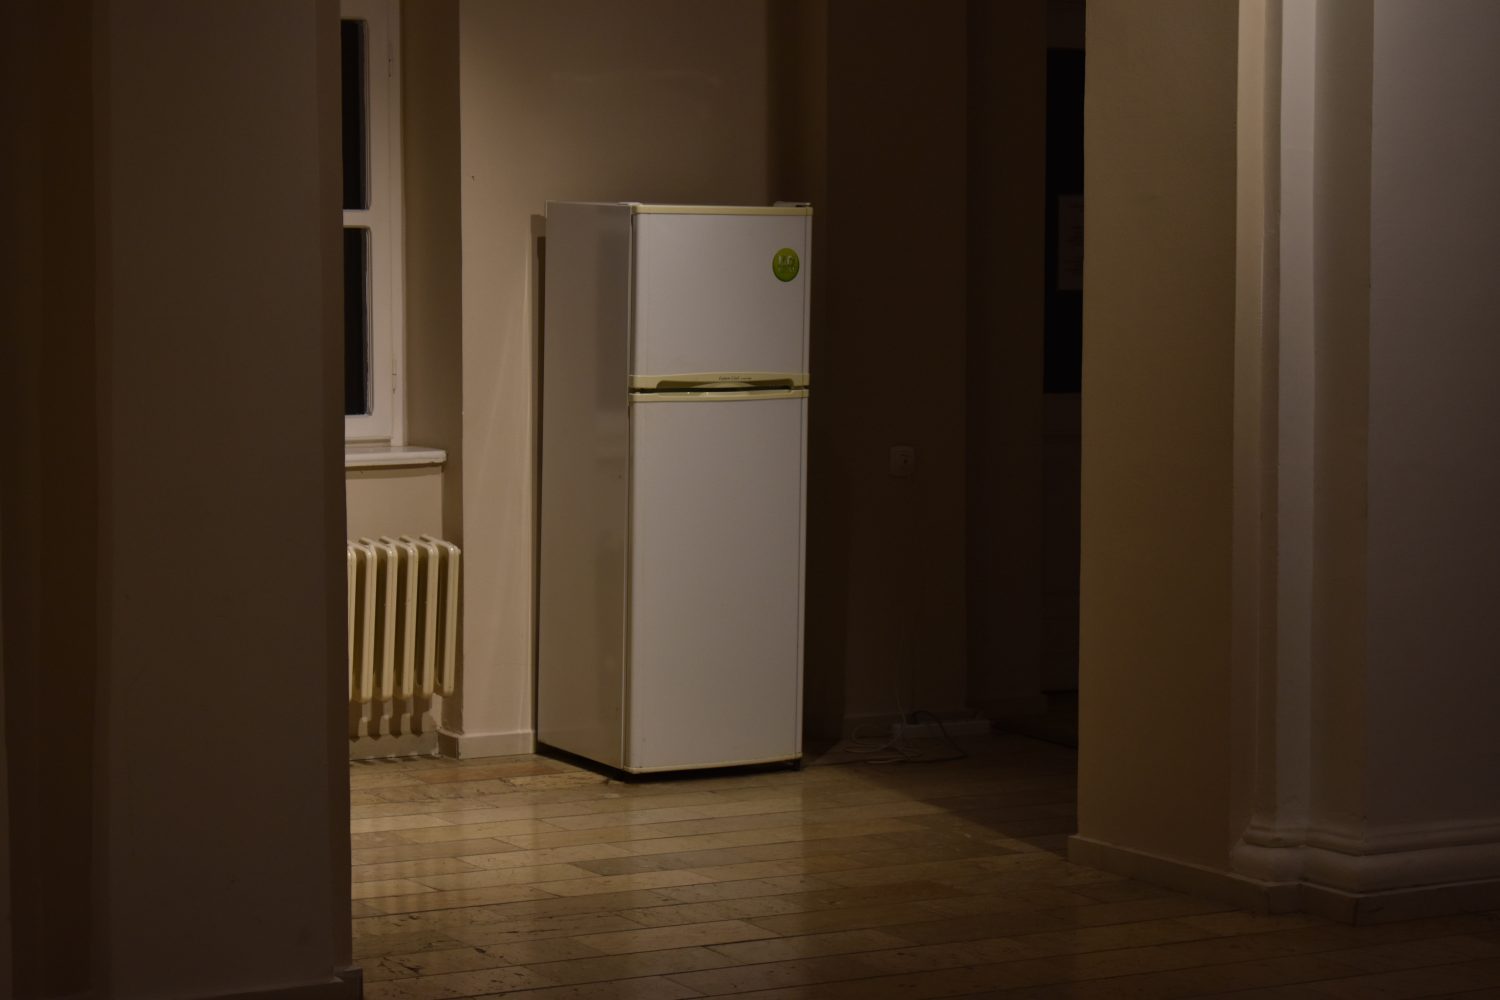 fridge-in-the-dark